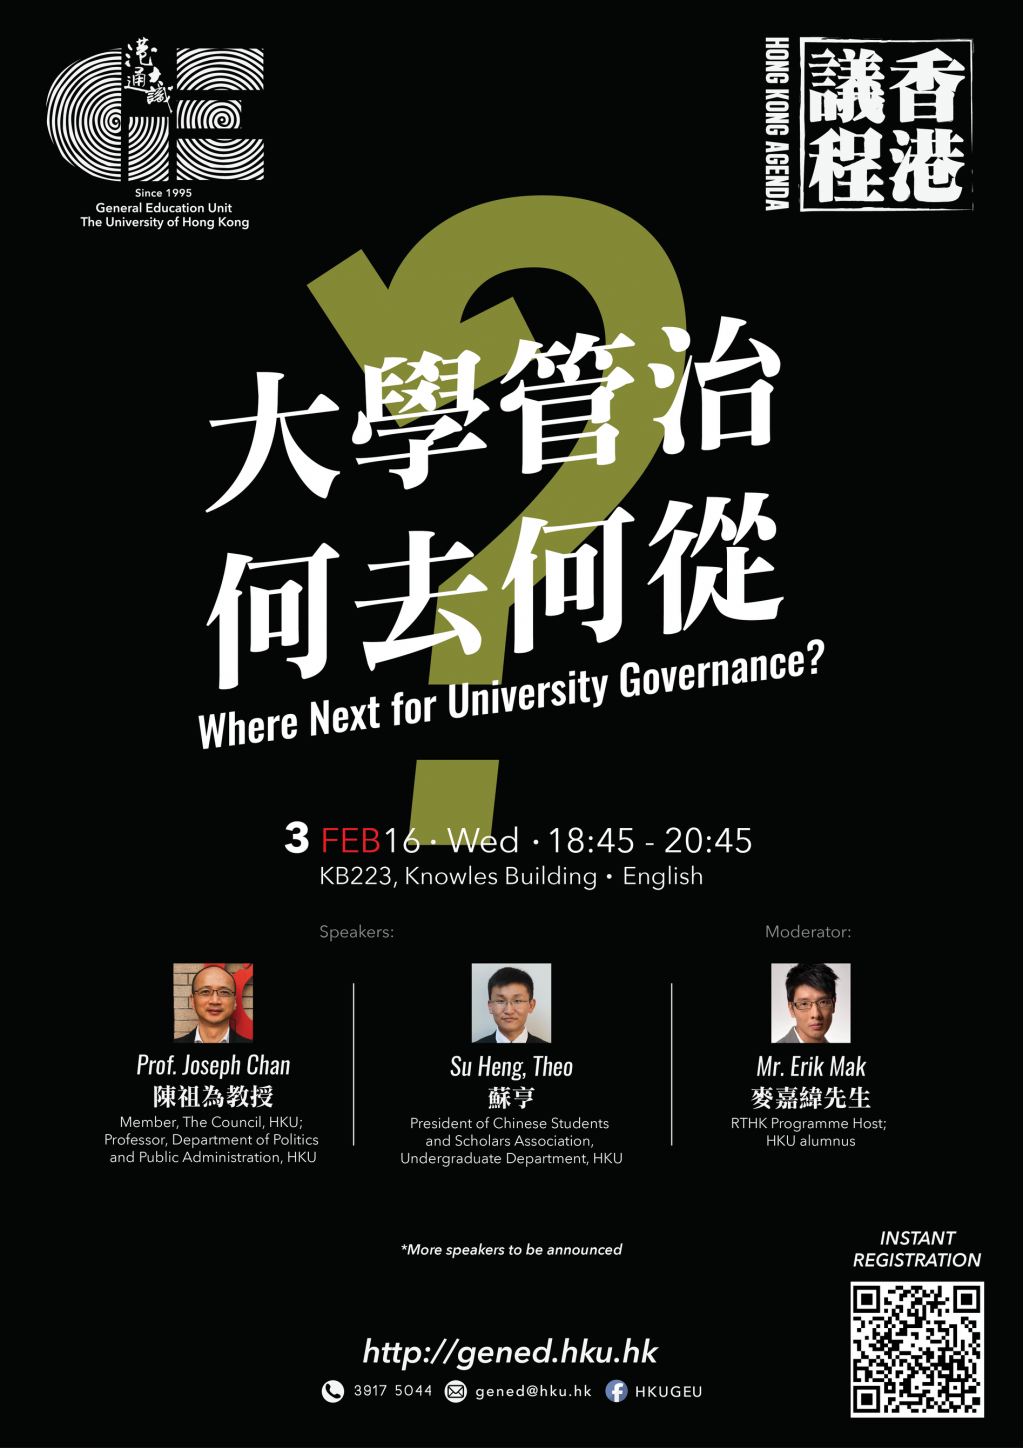 Where Next for University Governance?